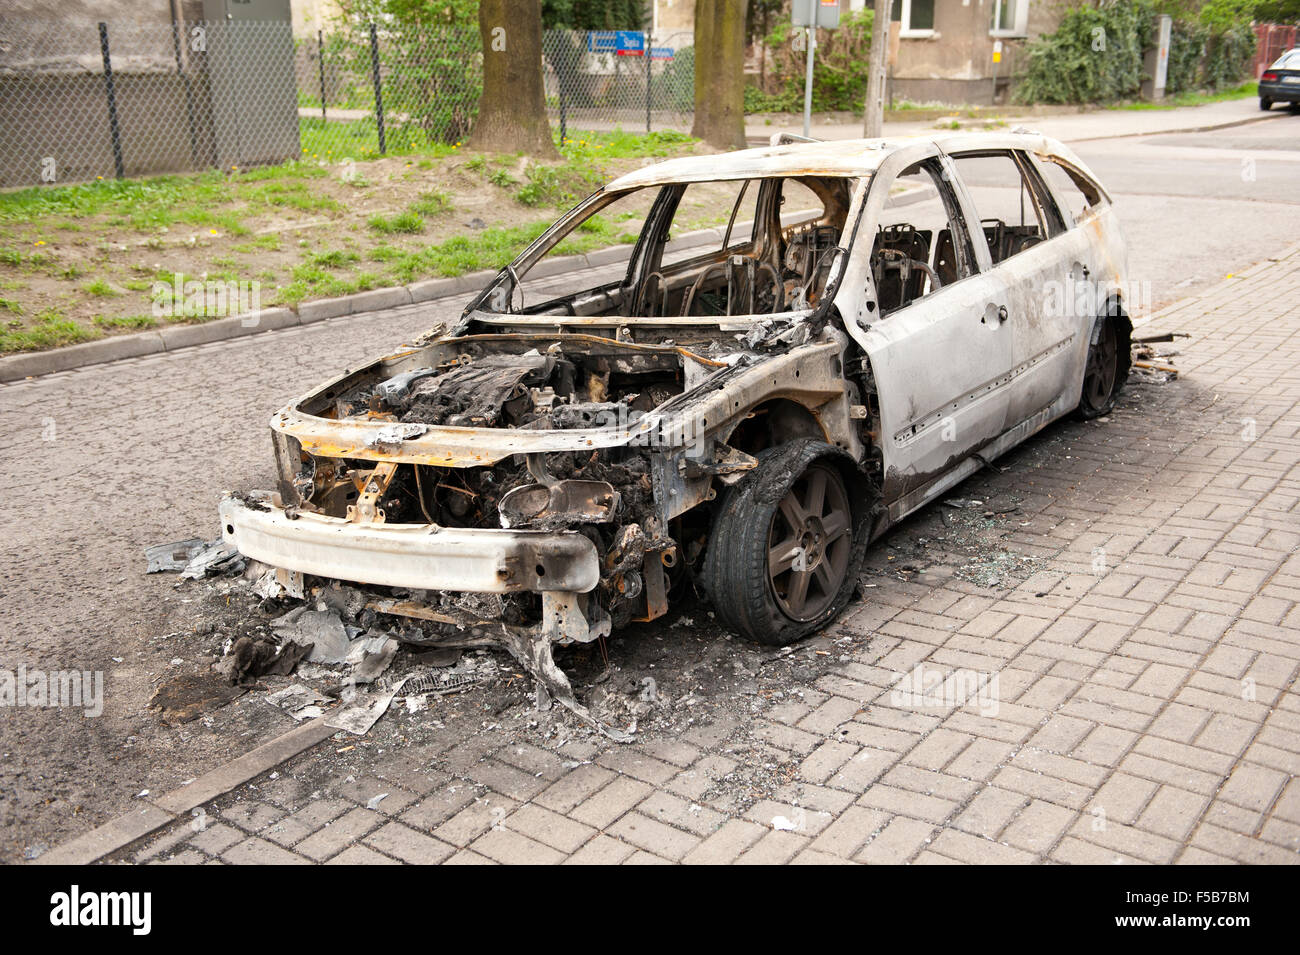 Verbrannte weißes Autowrack auf dem Bürgersteig in Polen, verwöhnte Auto in Feuerunfall, verkohlte Asche Brandstiftung Vorfälle und Junk-e-Fahrzeug... Stockfoto